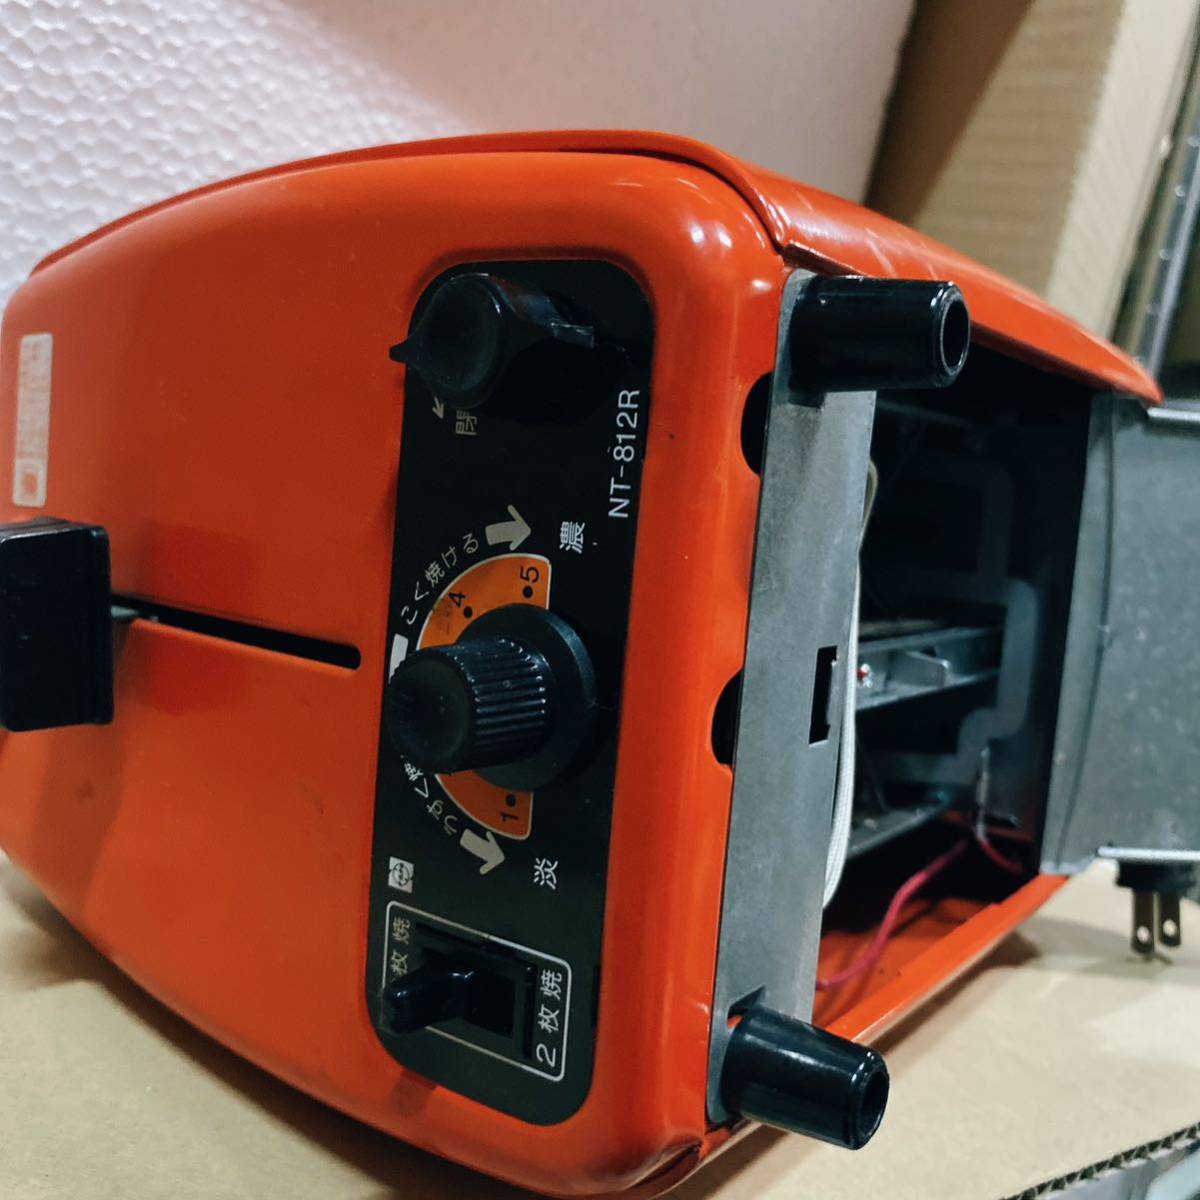  National Showa Retro электрический тостер pop up тостер NT-812R подтверждение рабочего состояния 